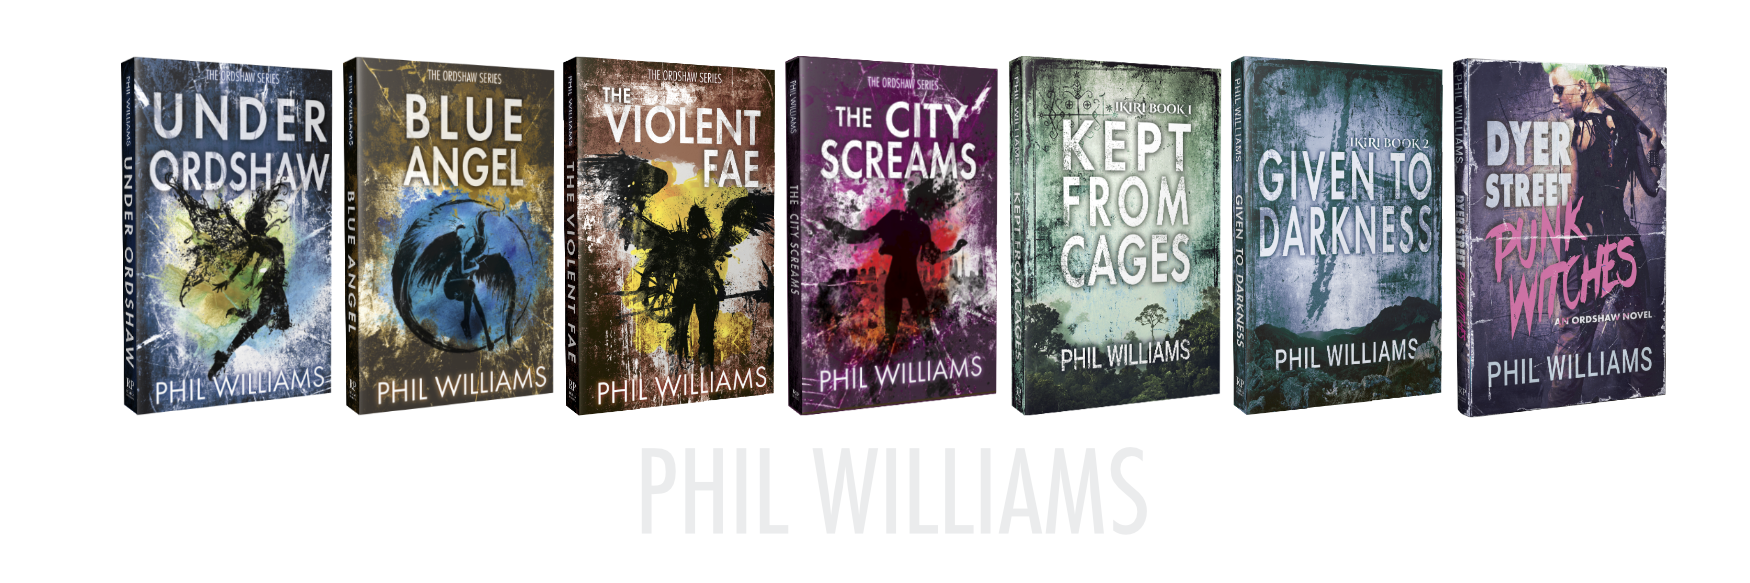 phil williams books